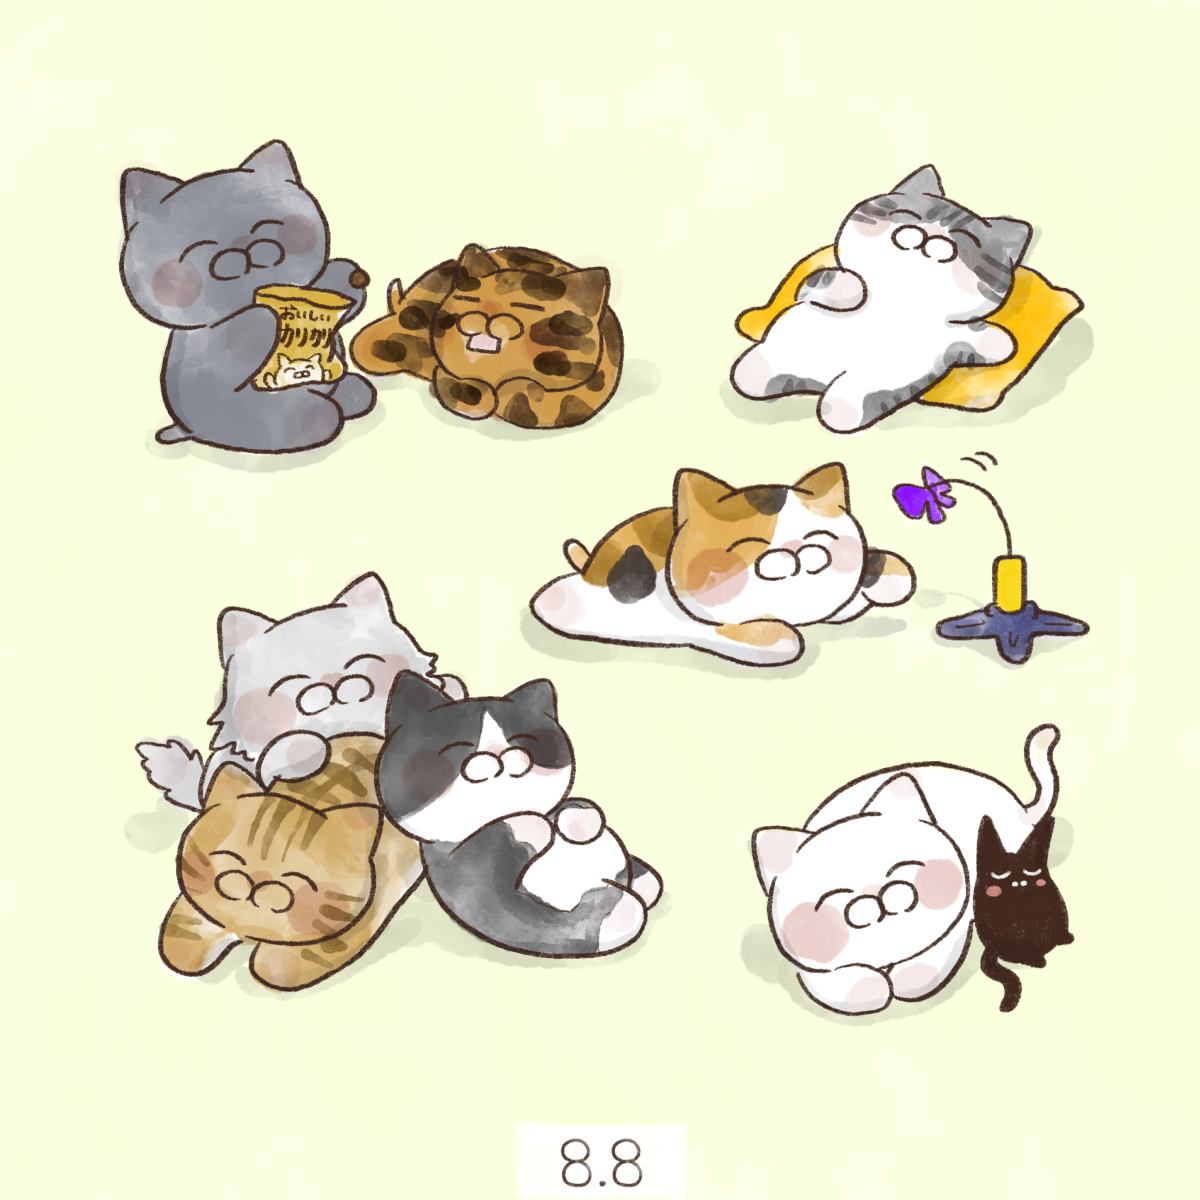 「8月8日【#世界猫の日】
世界はネコだらけWorld cat day 」|大和猫のイラスト